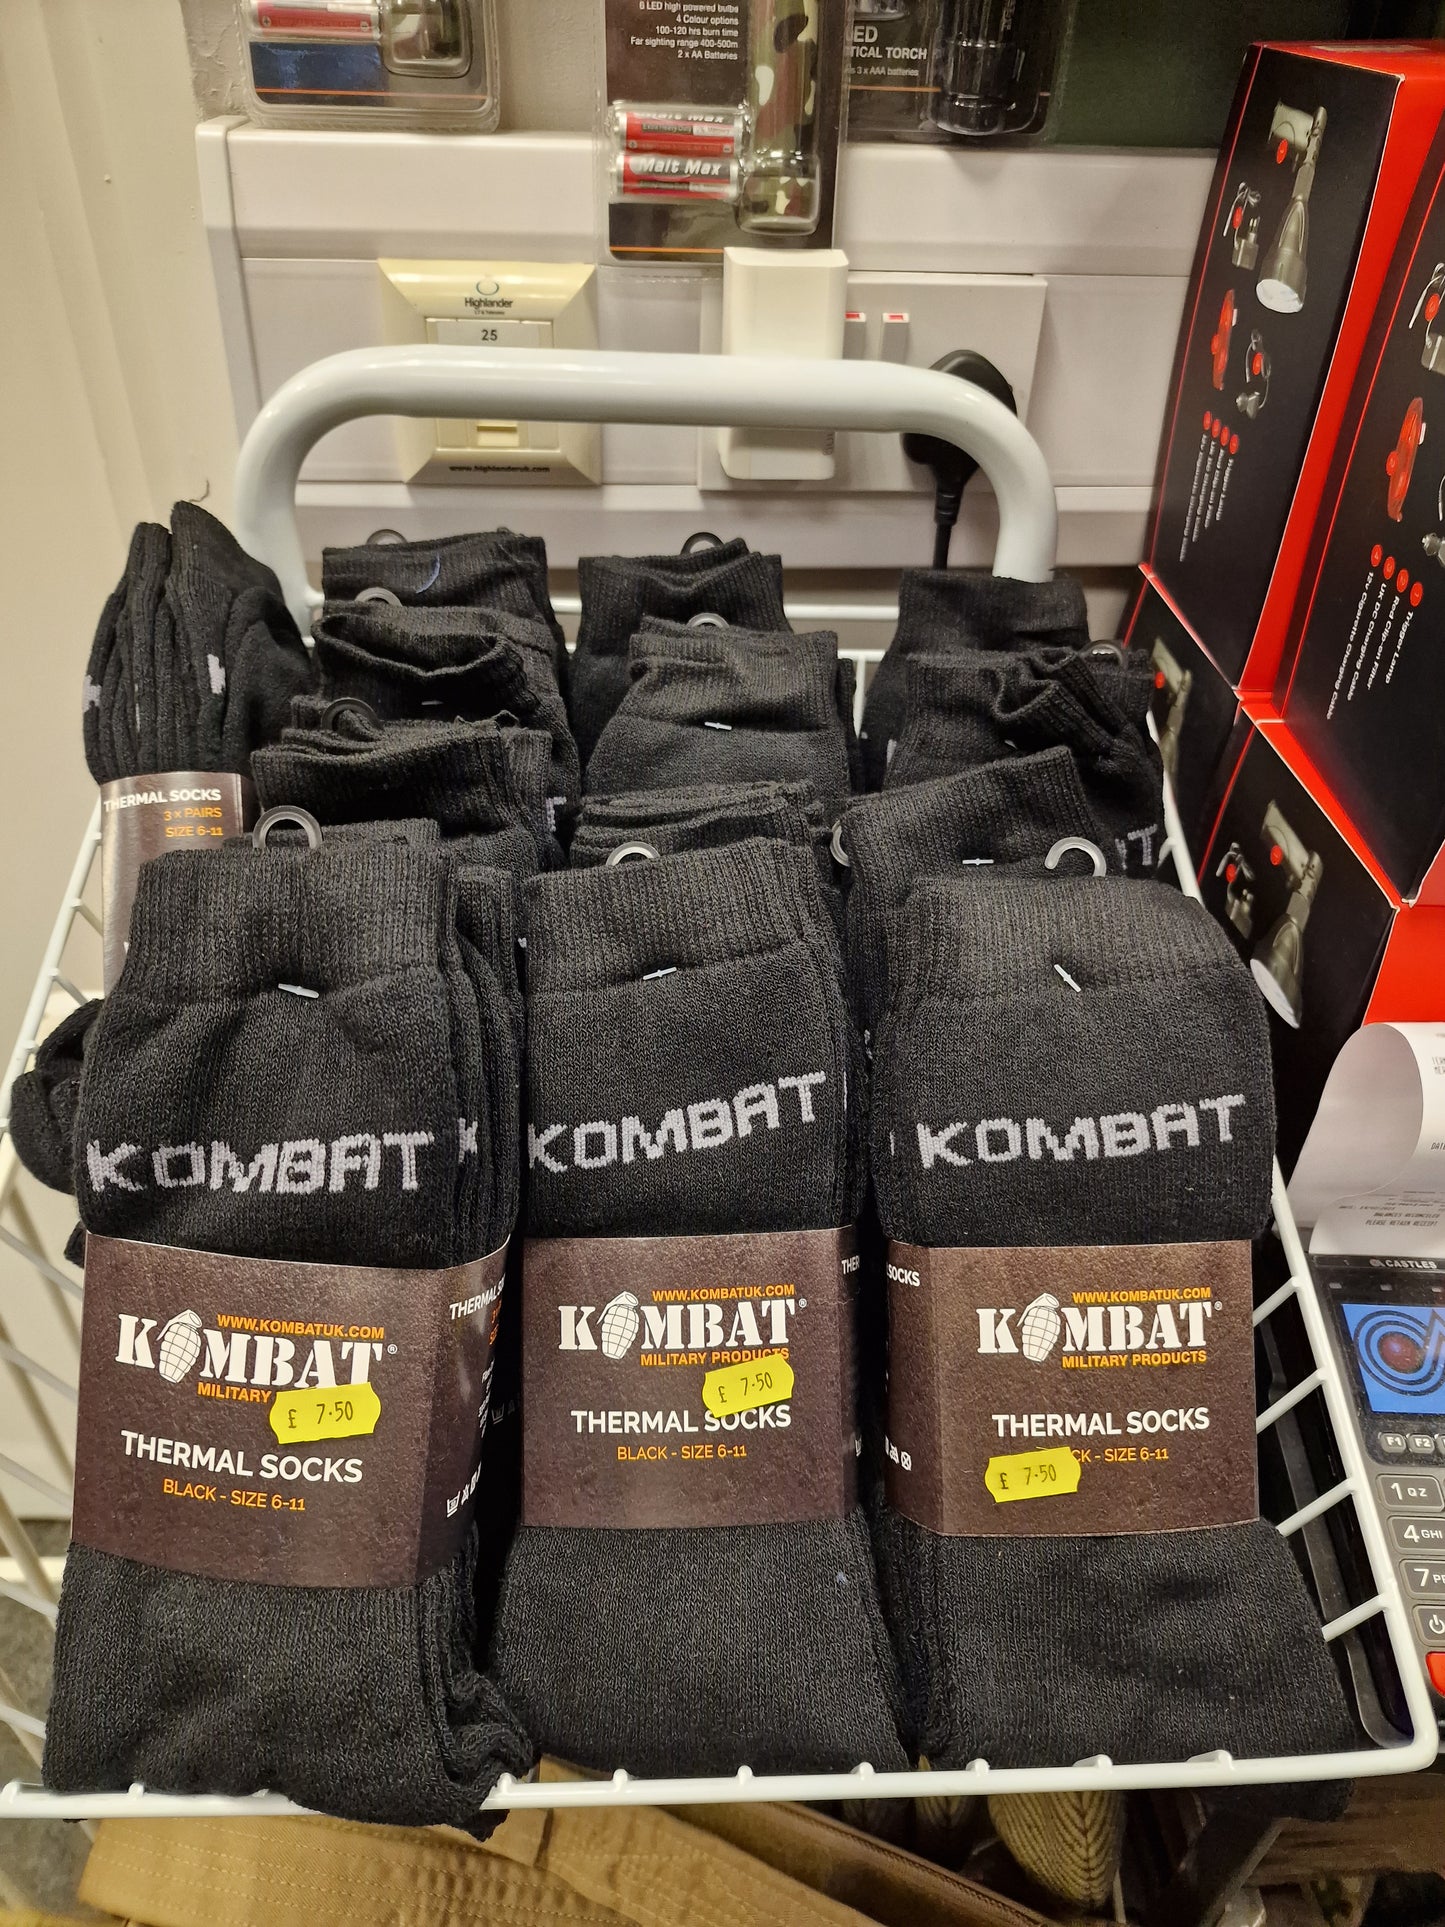 Kombat UK thermal socks 3 pack great value